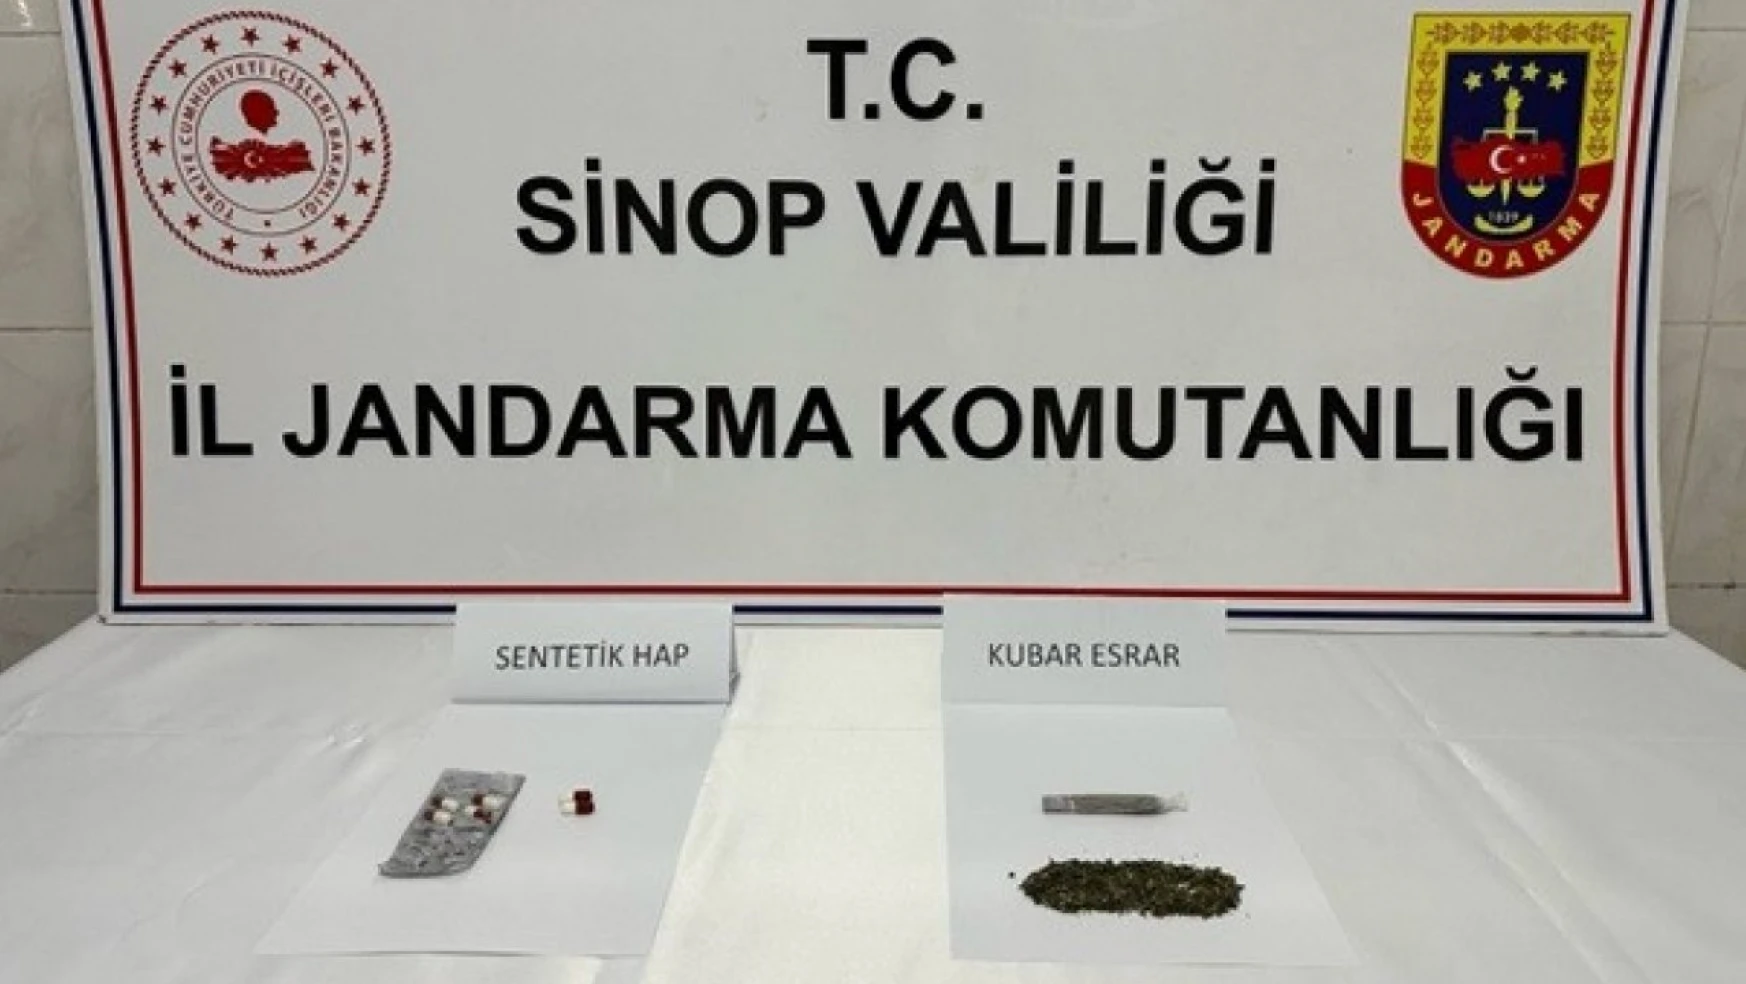 Sinop'ta şüpheli araçta uyuşturucu ele geçti: 2 gözaltı